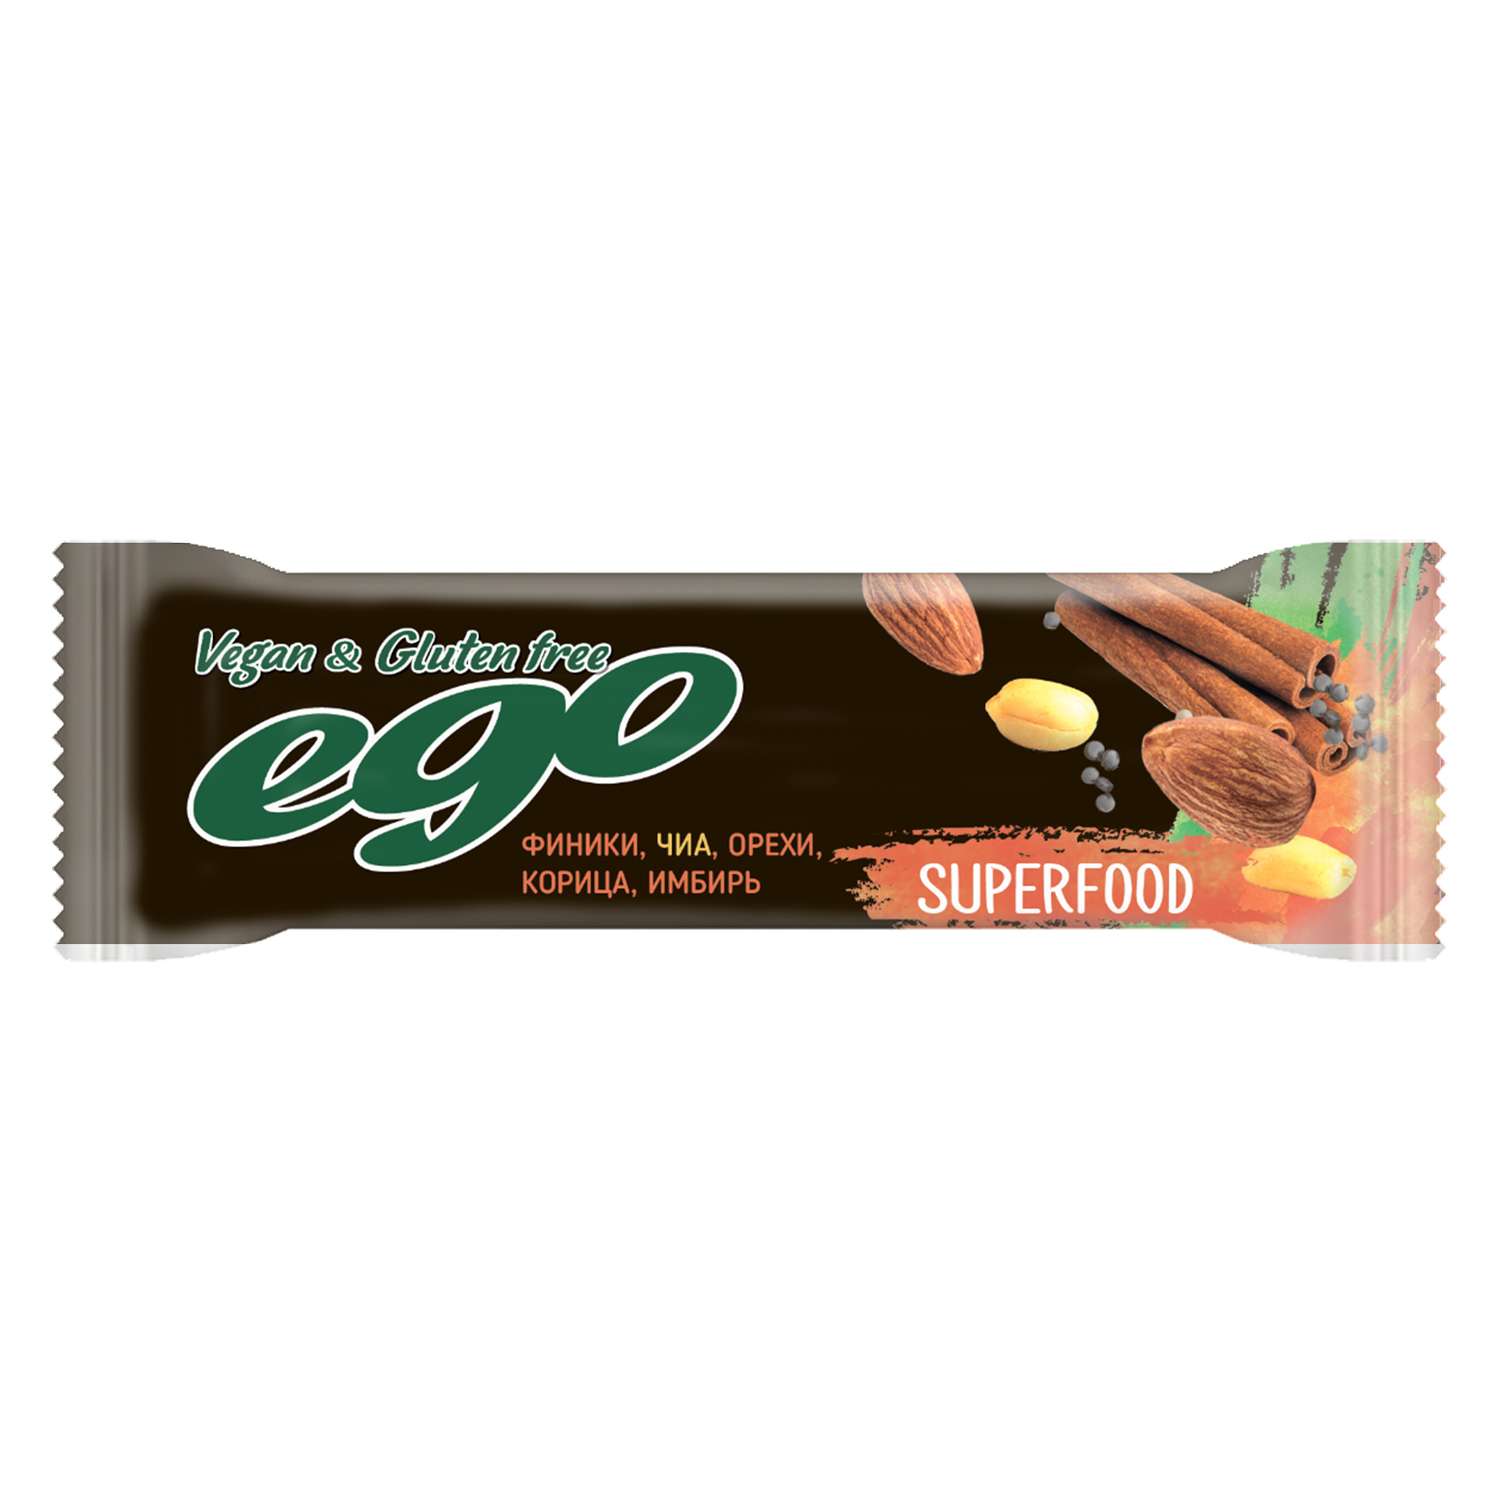 Батончик Ego фруктово-ореховый Superfood Чиа 45г - фото 1